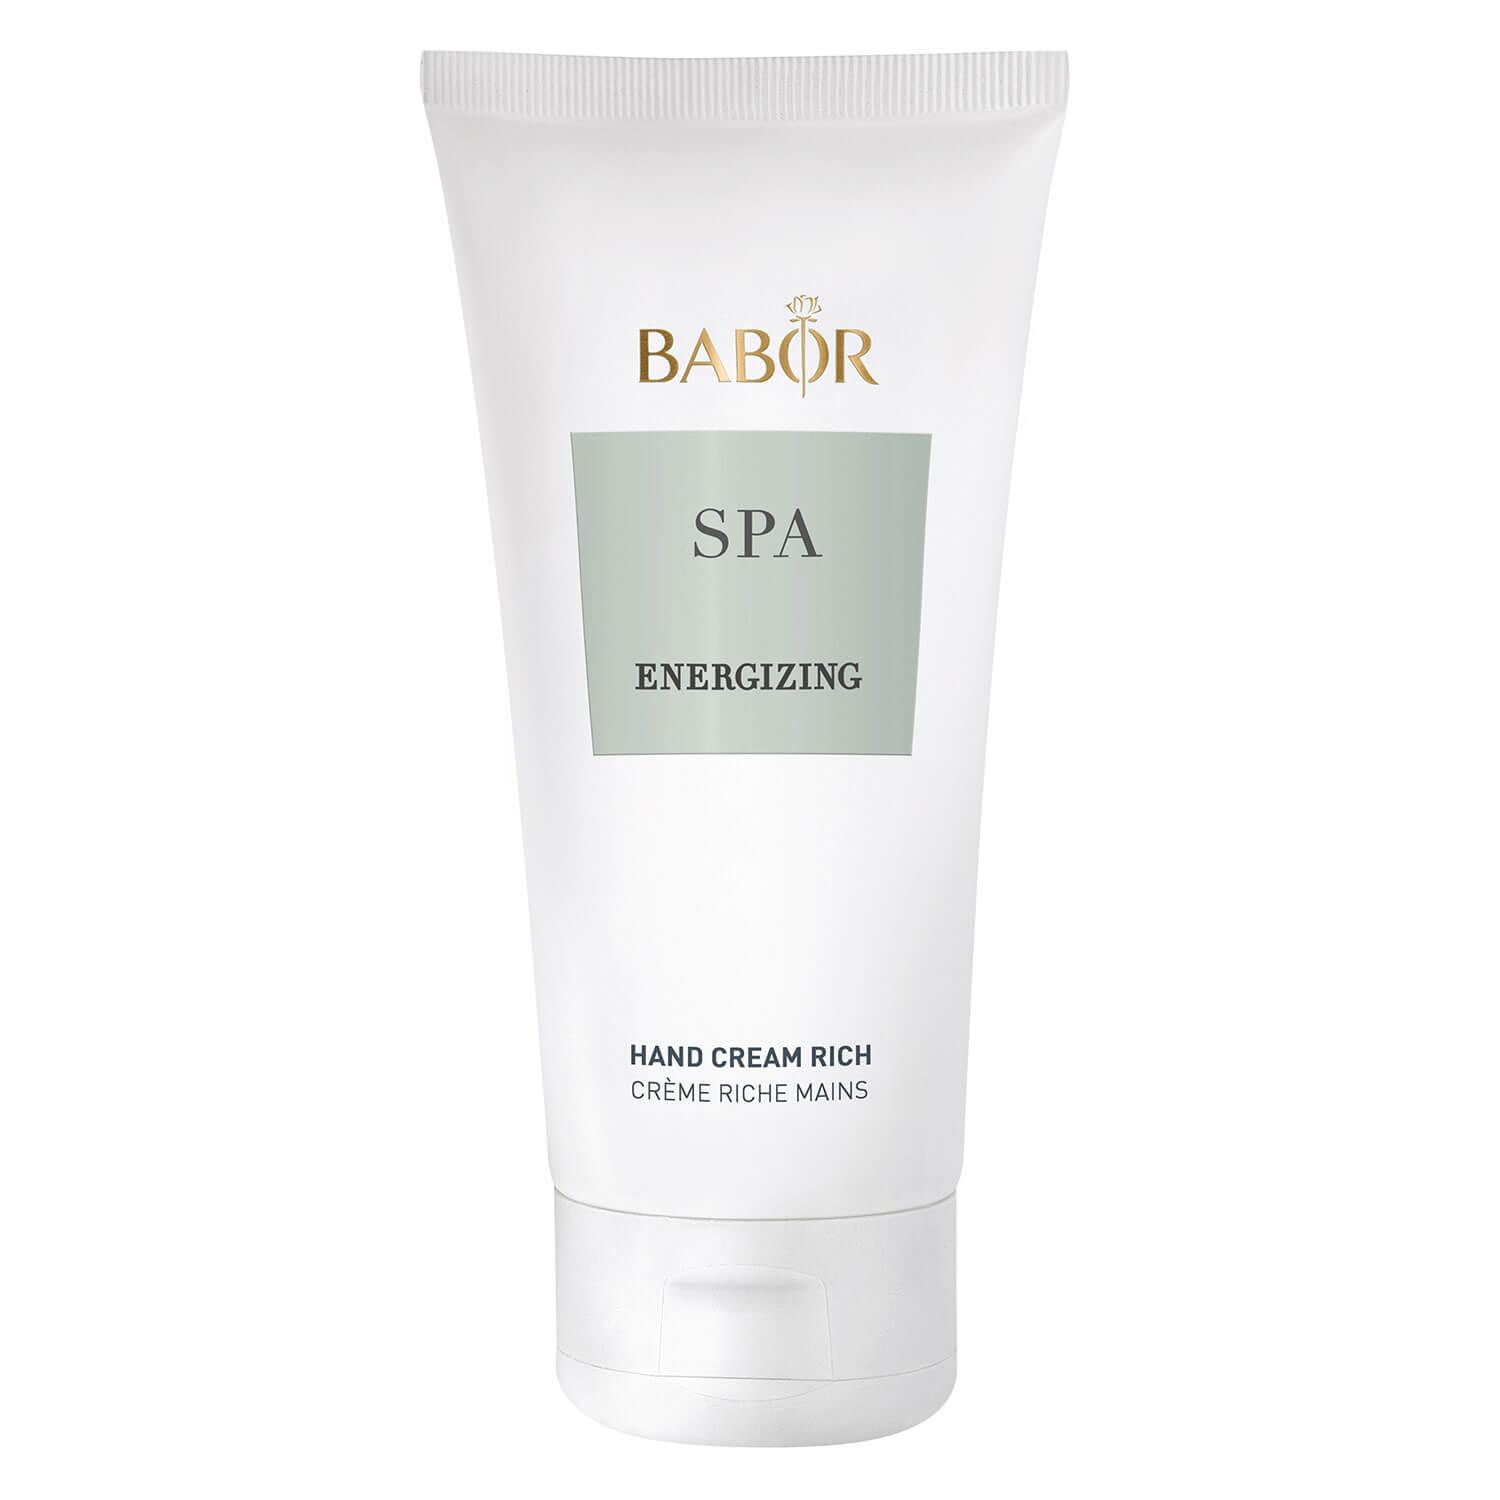 BABOR SPA - Energizing Energizing Hand Cream Rich 